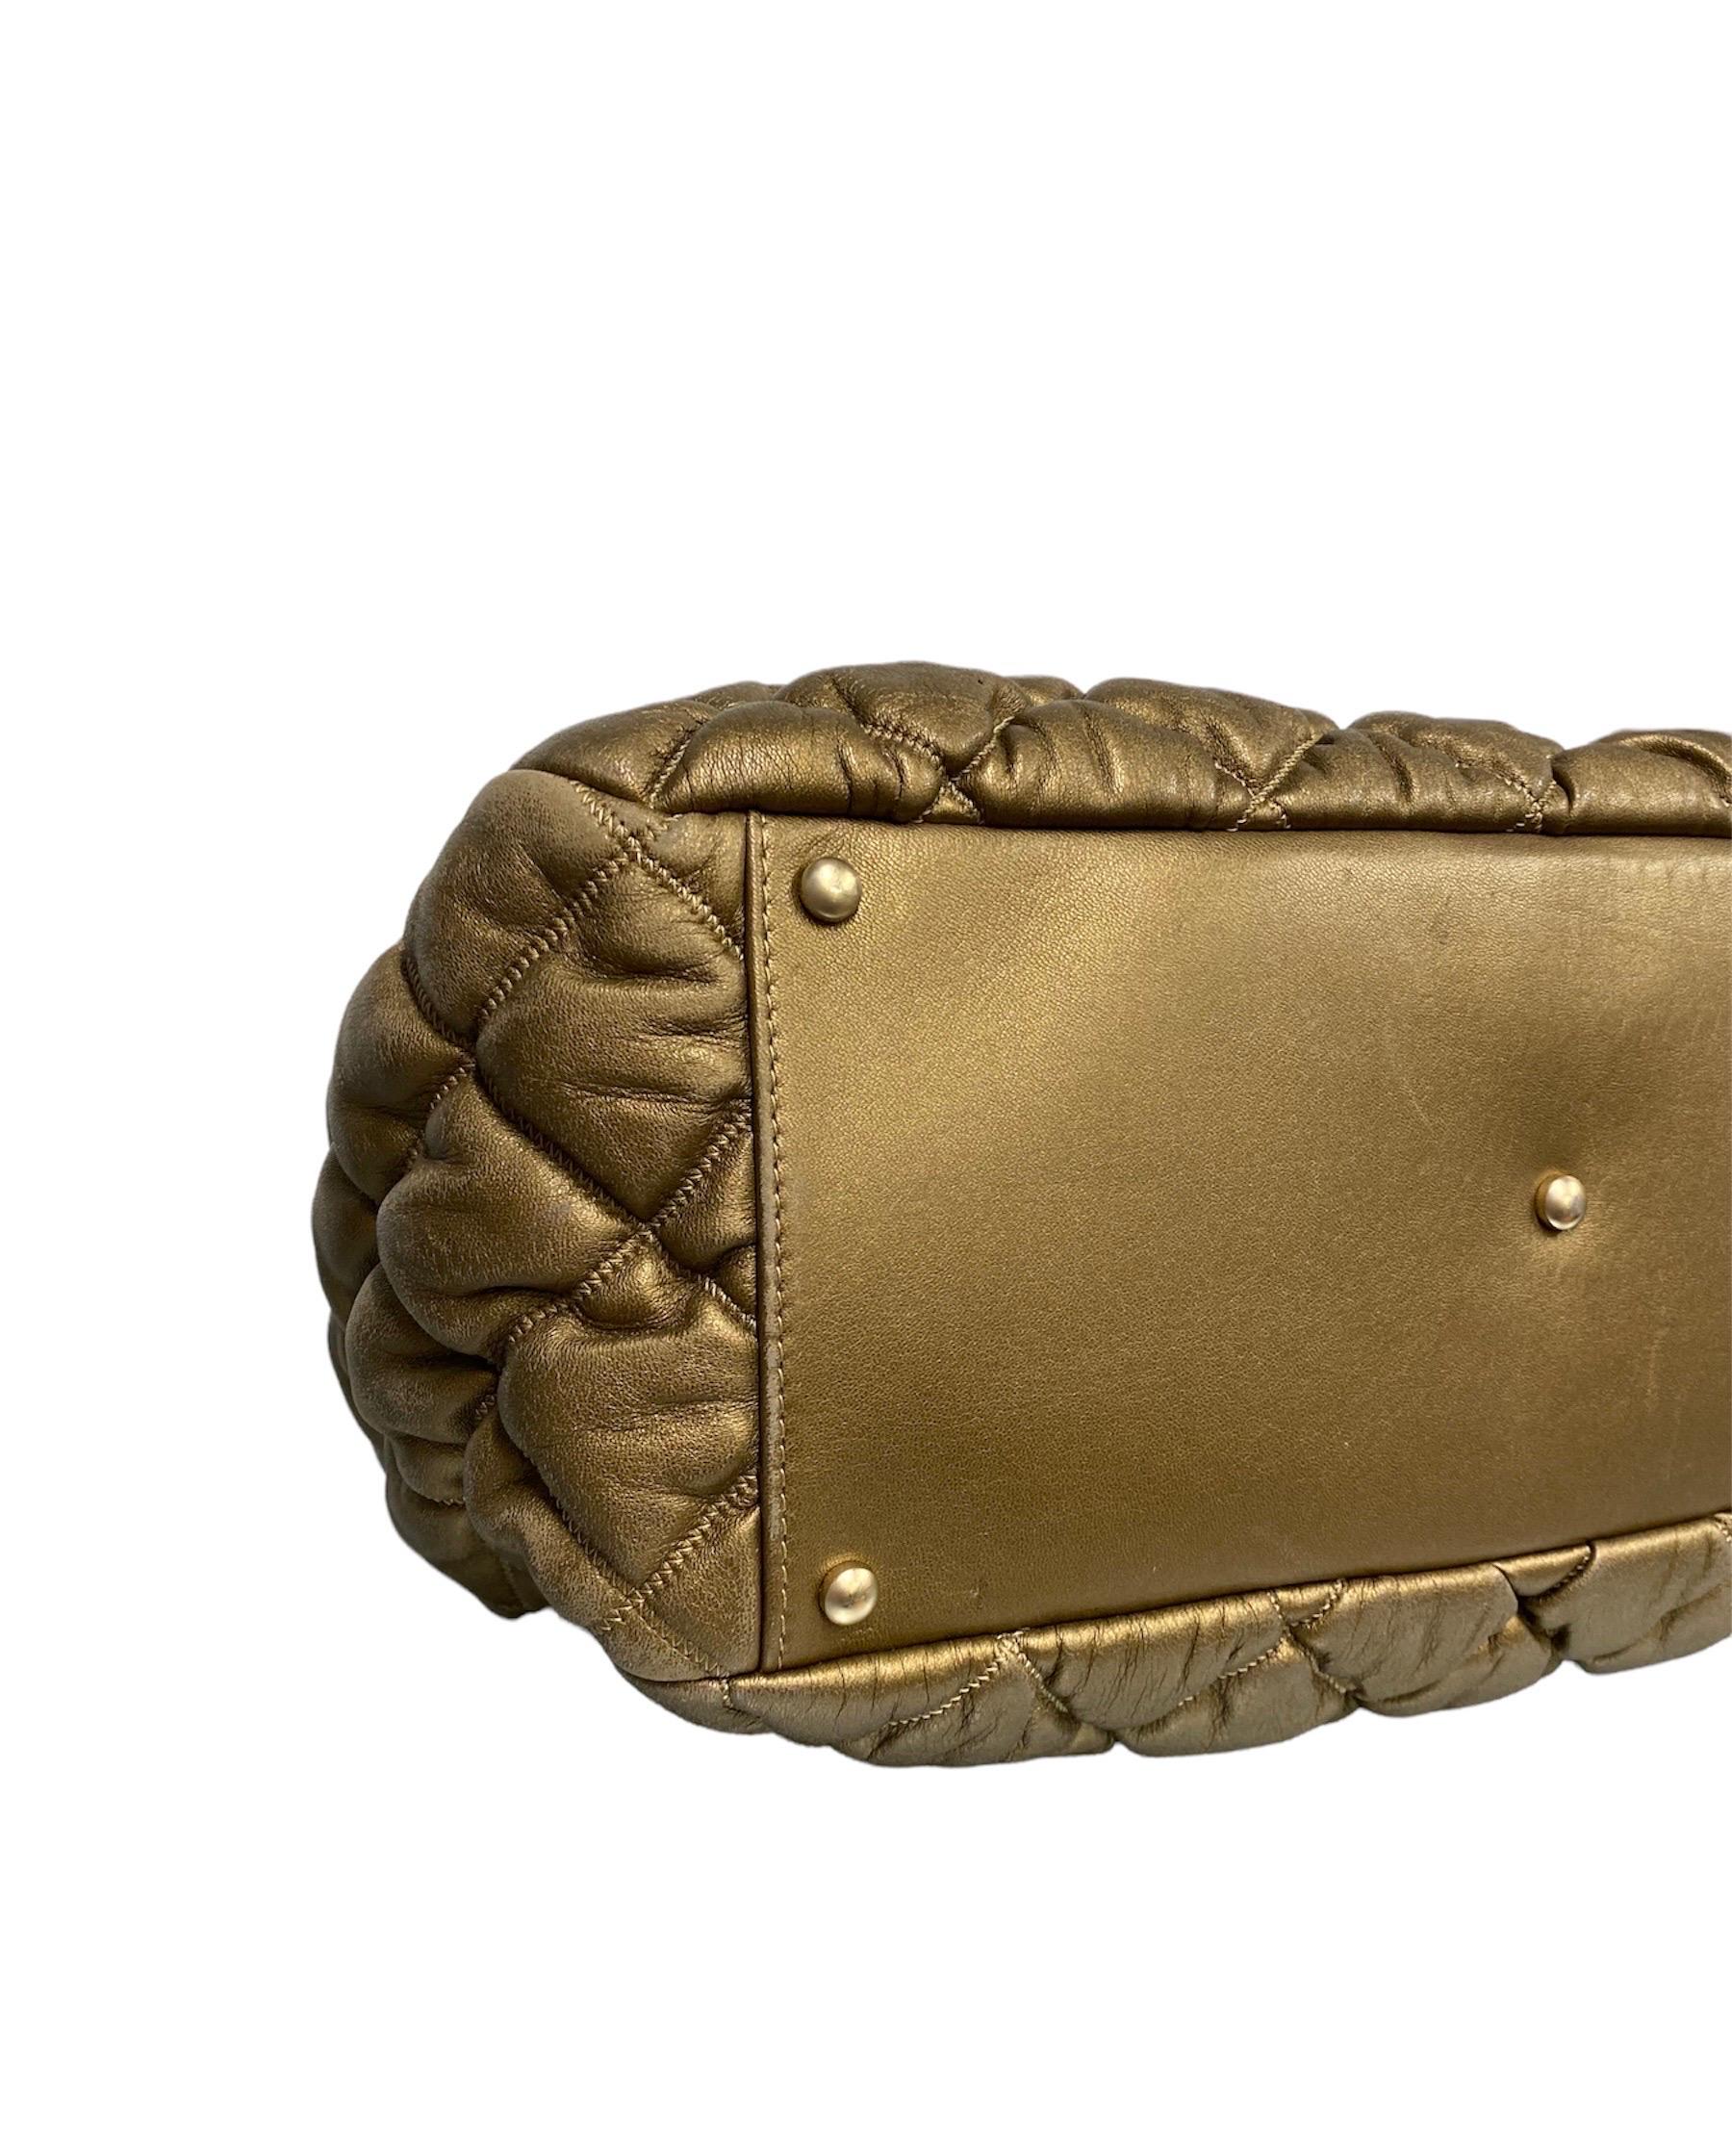 Women's 2010 Chanel Bolla Gold Shoulder Bag For Sale